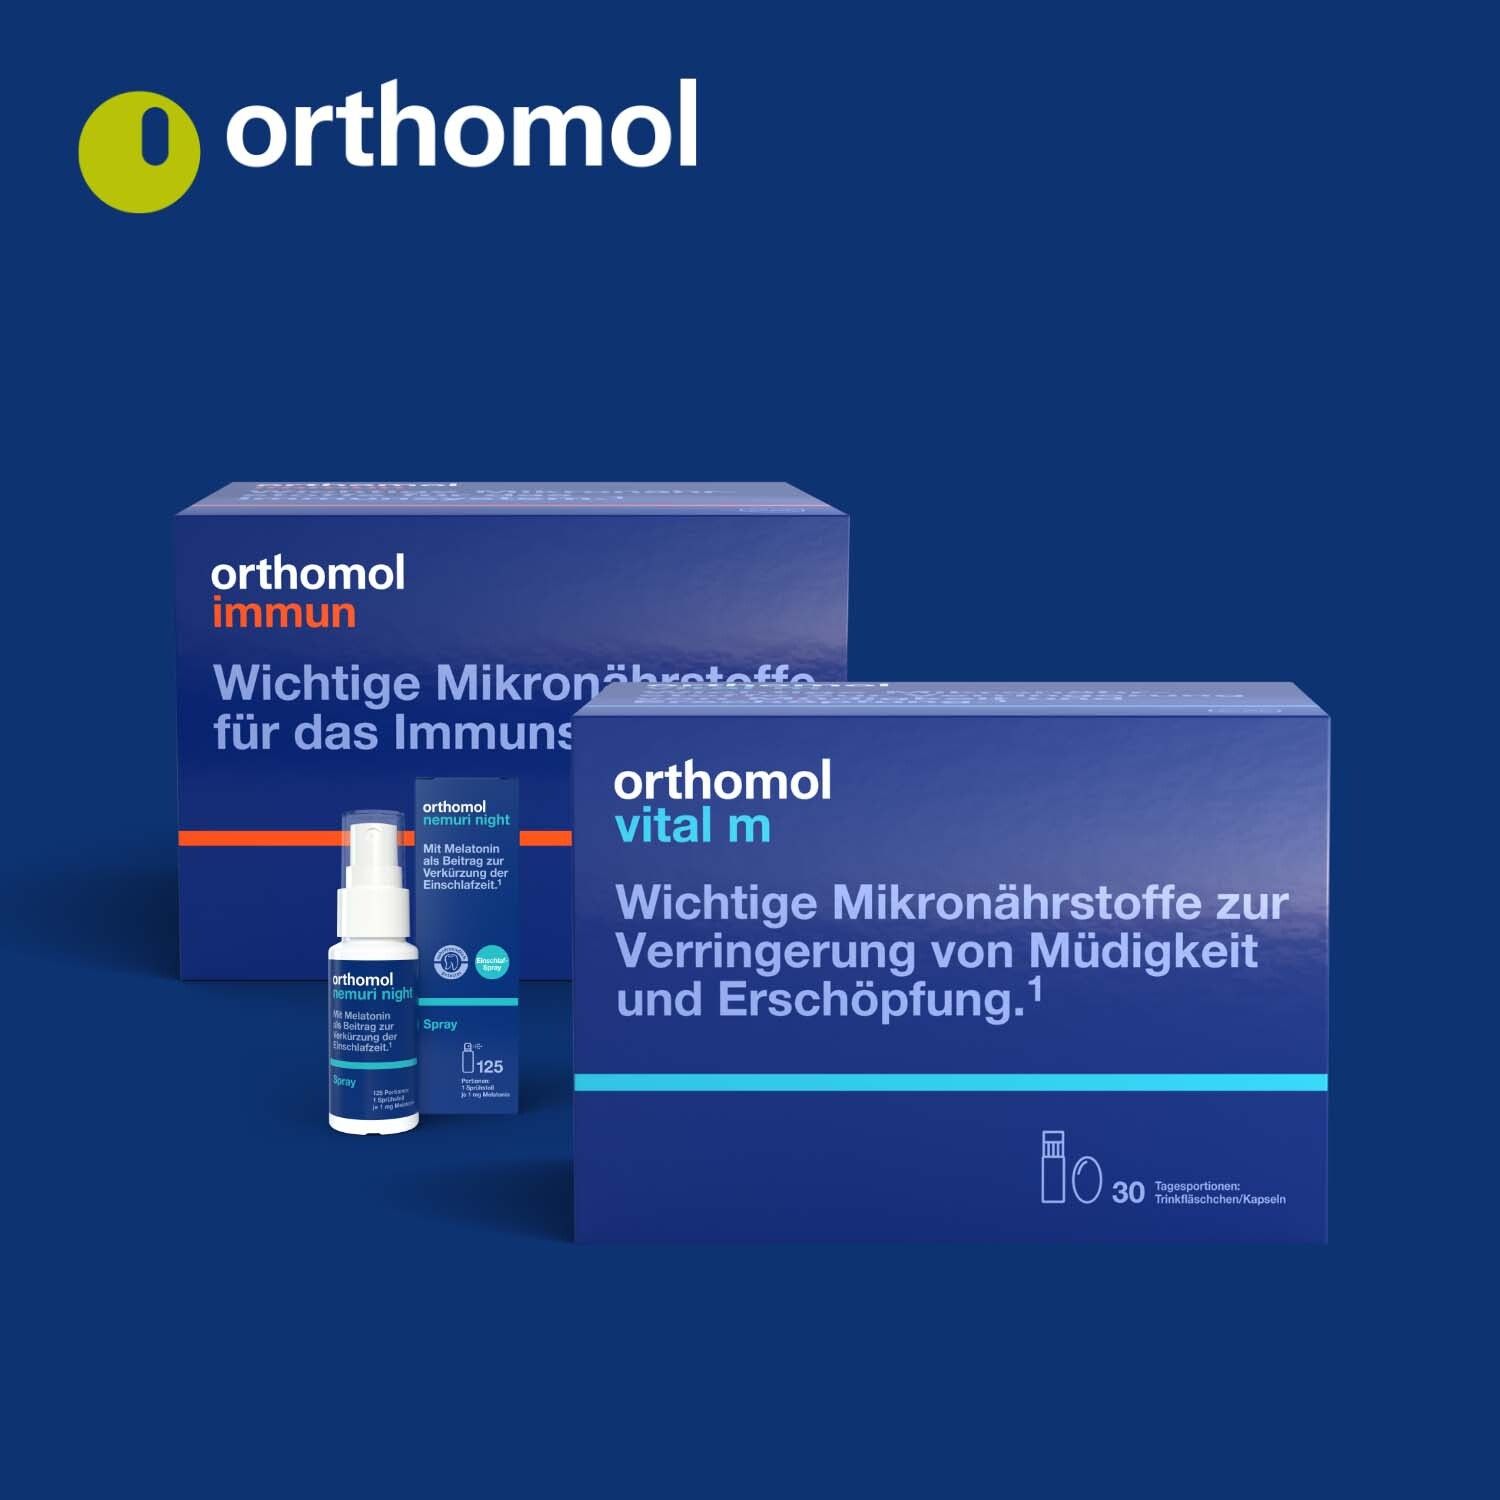 Orthomol Nemuri night - zur Verkürzung der Einschlafzeit - Heißgetränk mit Melatonin und Hopfen-Extrakt - Granulat